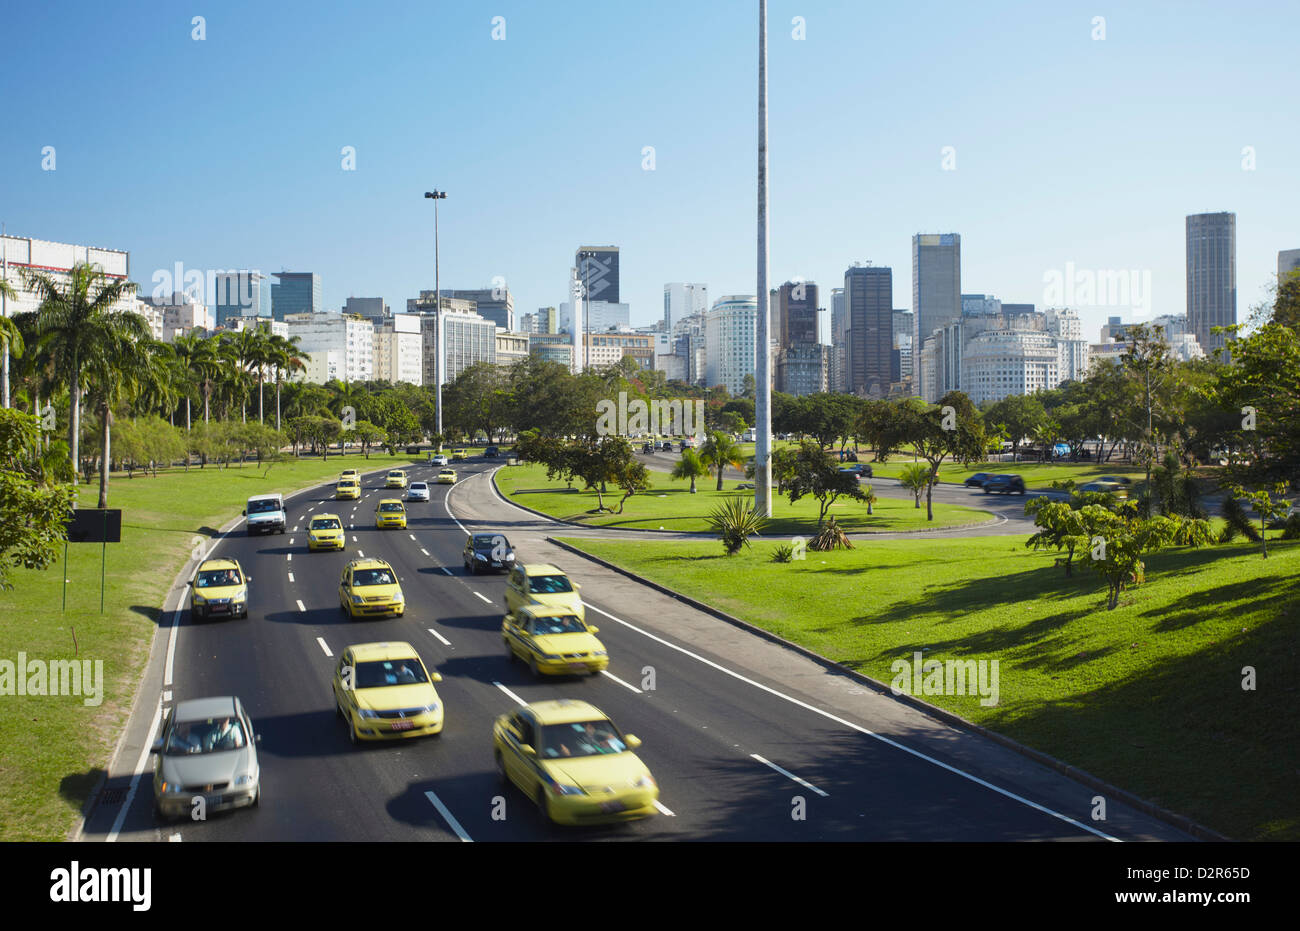 Traffic passing through Parque do Flamengo, Catete, Rio de Janeiro, South America Stock Photo